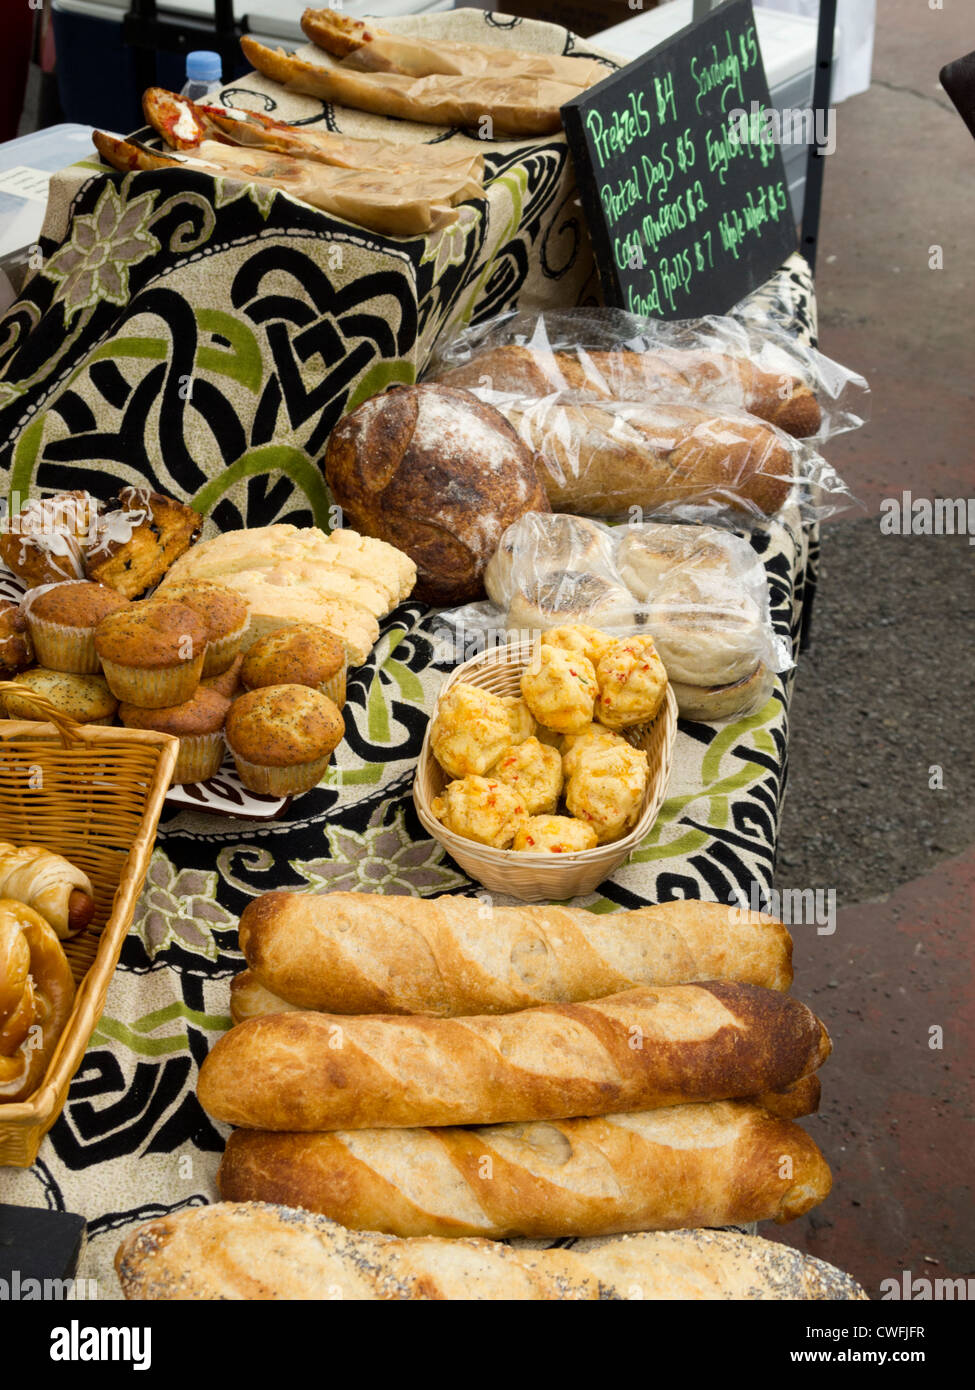 Des produits de boulangerie, marché aux puces, Brooklyn, New York, USA Banque D'Images